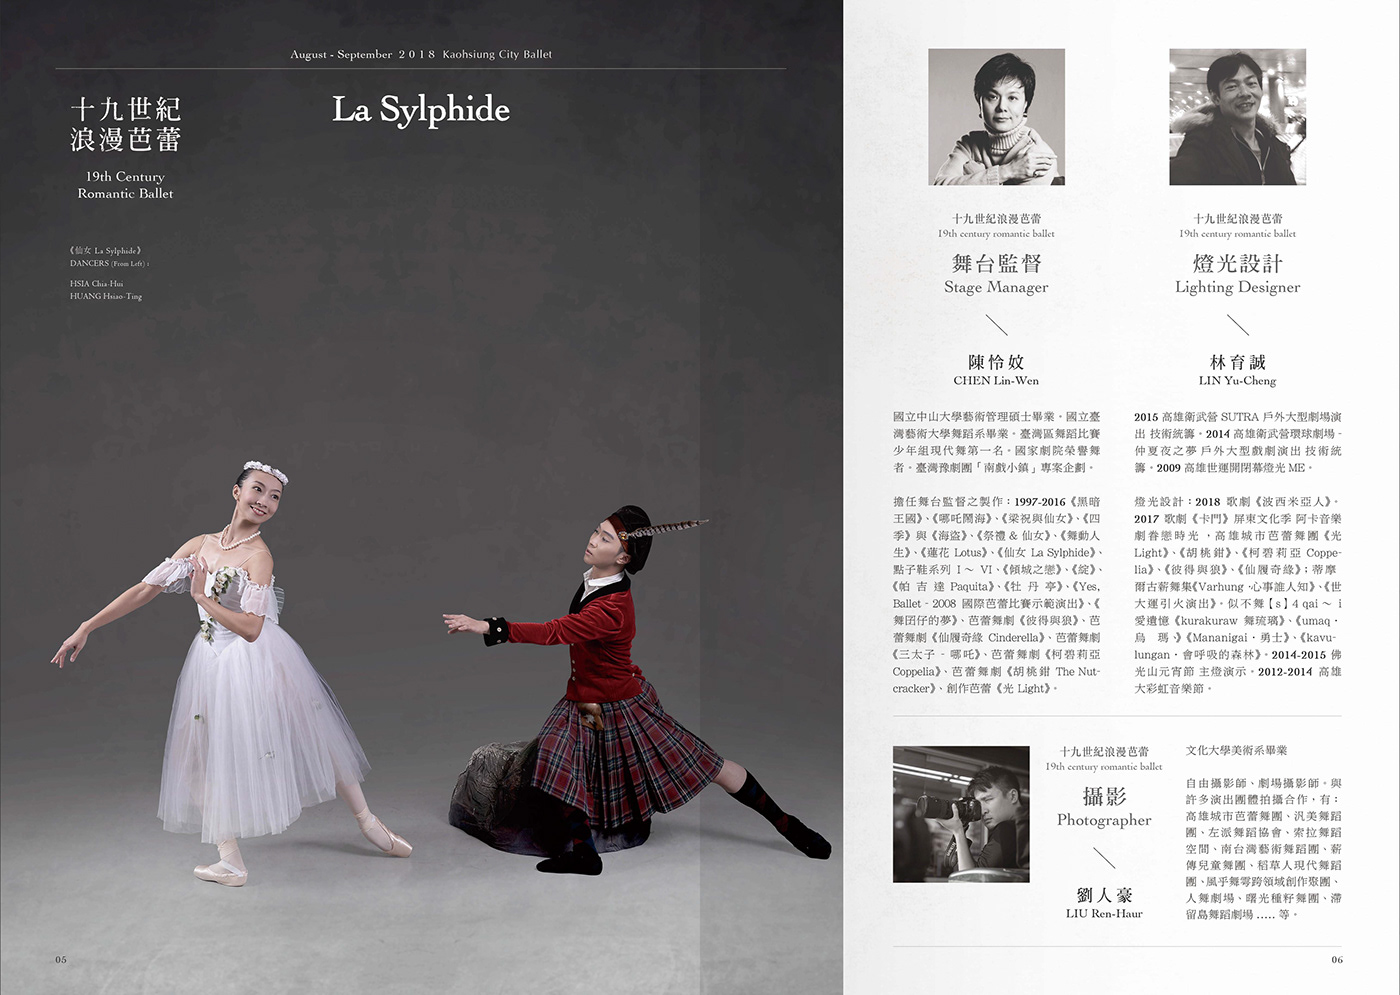 舞蹈表演文宣 活動視覺設計 平面設計 海報設計 表演藝術 芭蕾 林誼璇 高雄城市芭蕾舞團 graphic design  Yi-Syuan Lin